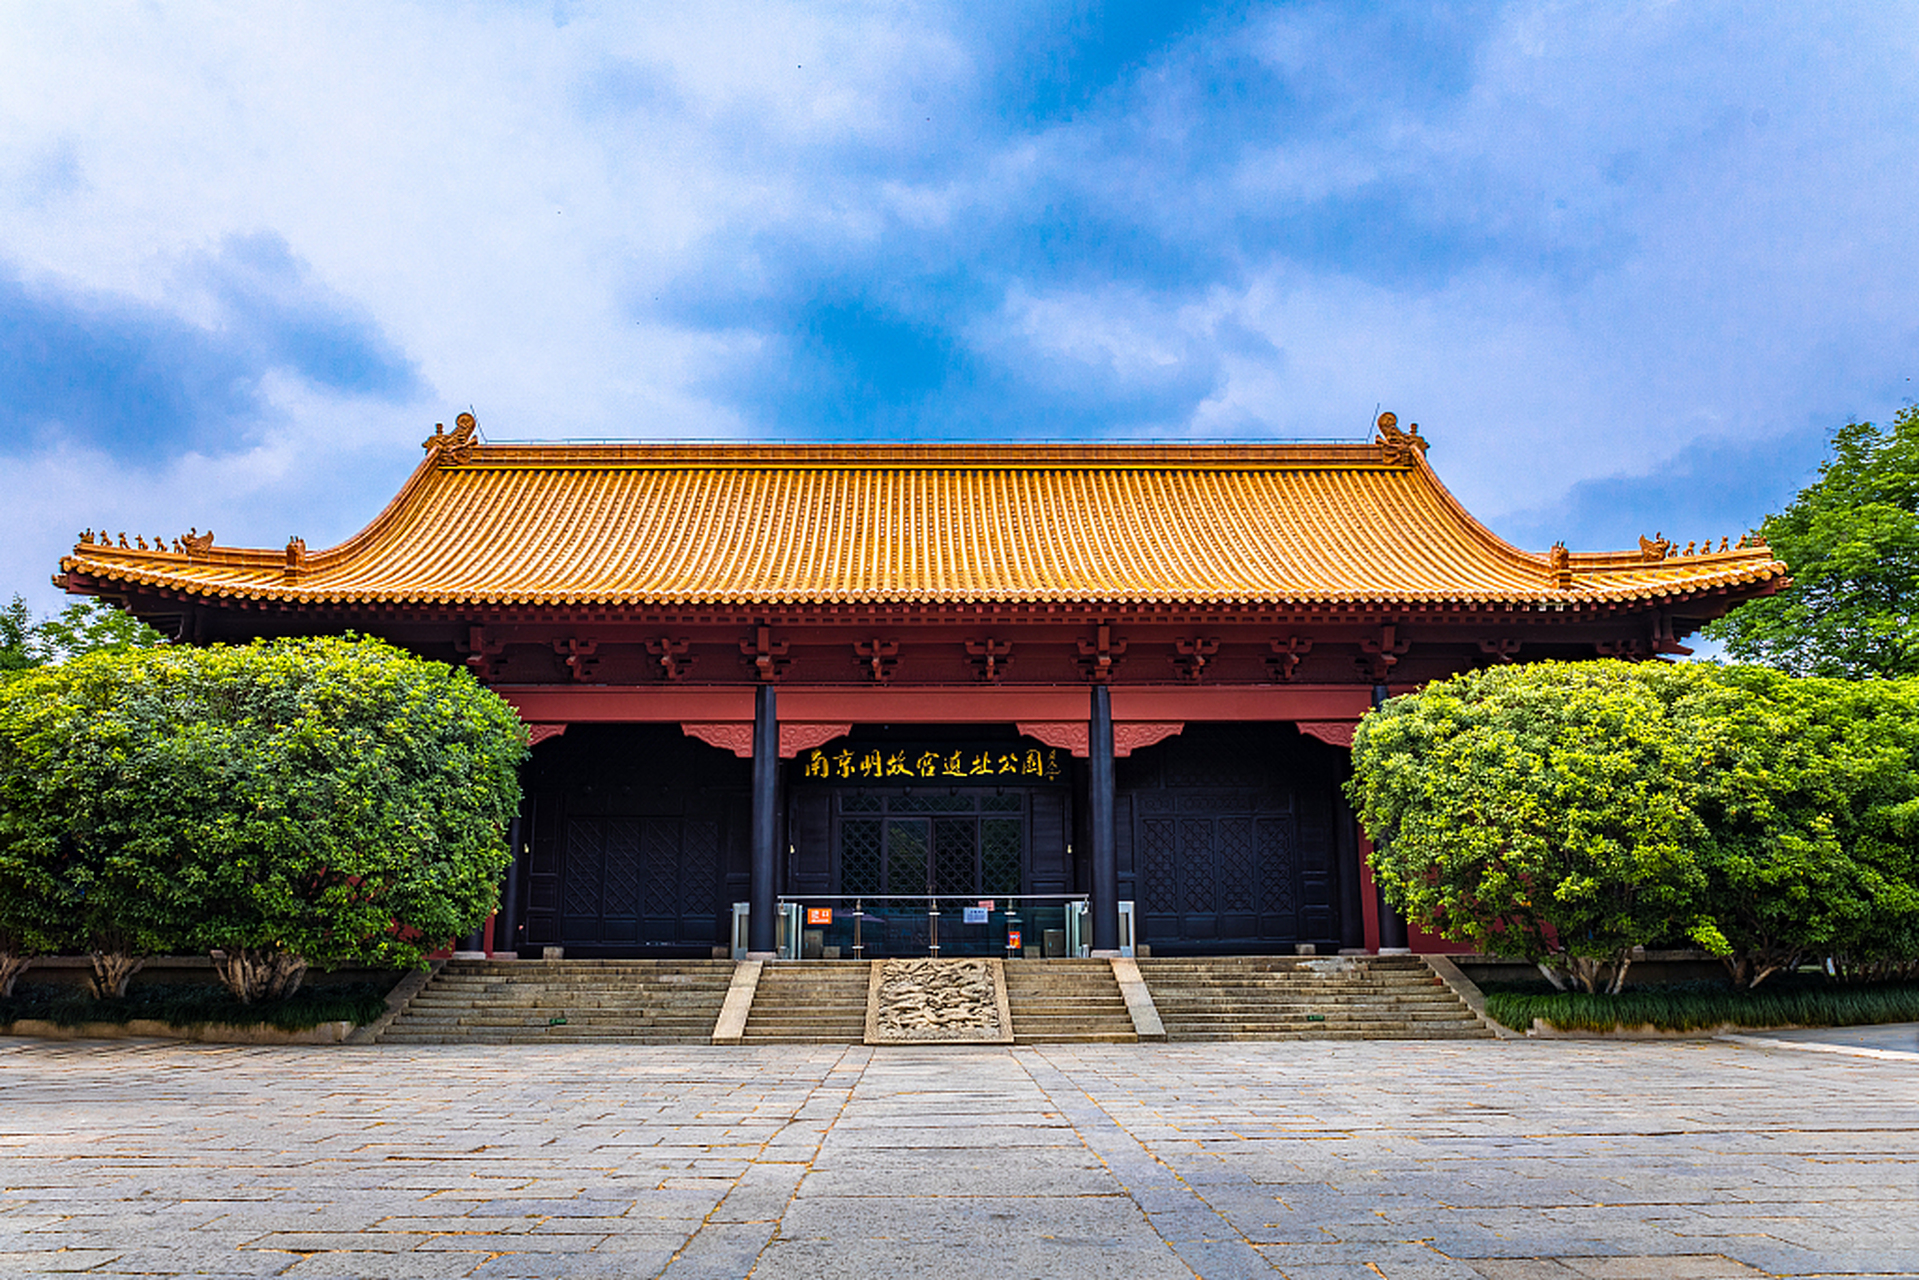 南京故宫是明朝皇宫,被誉为世界第一宫殿,是中国古代建筑艺术的巅峰